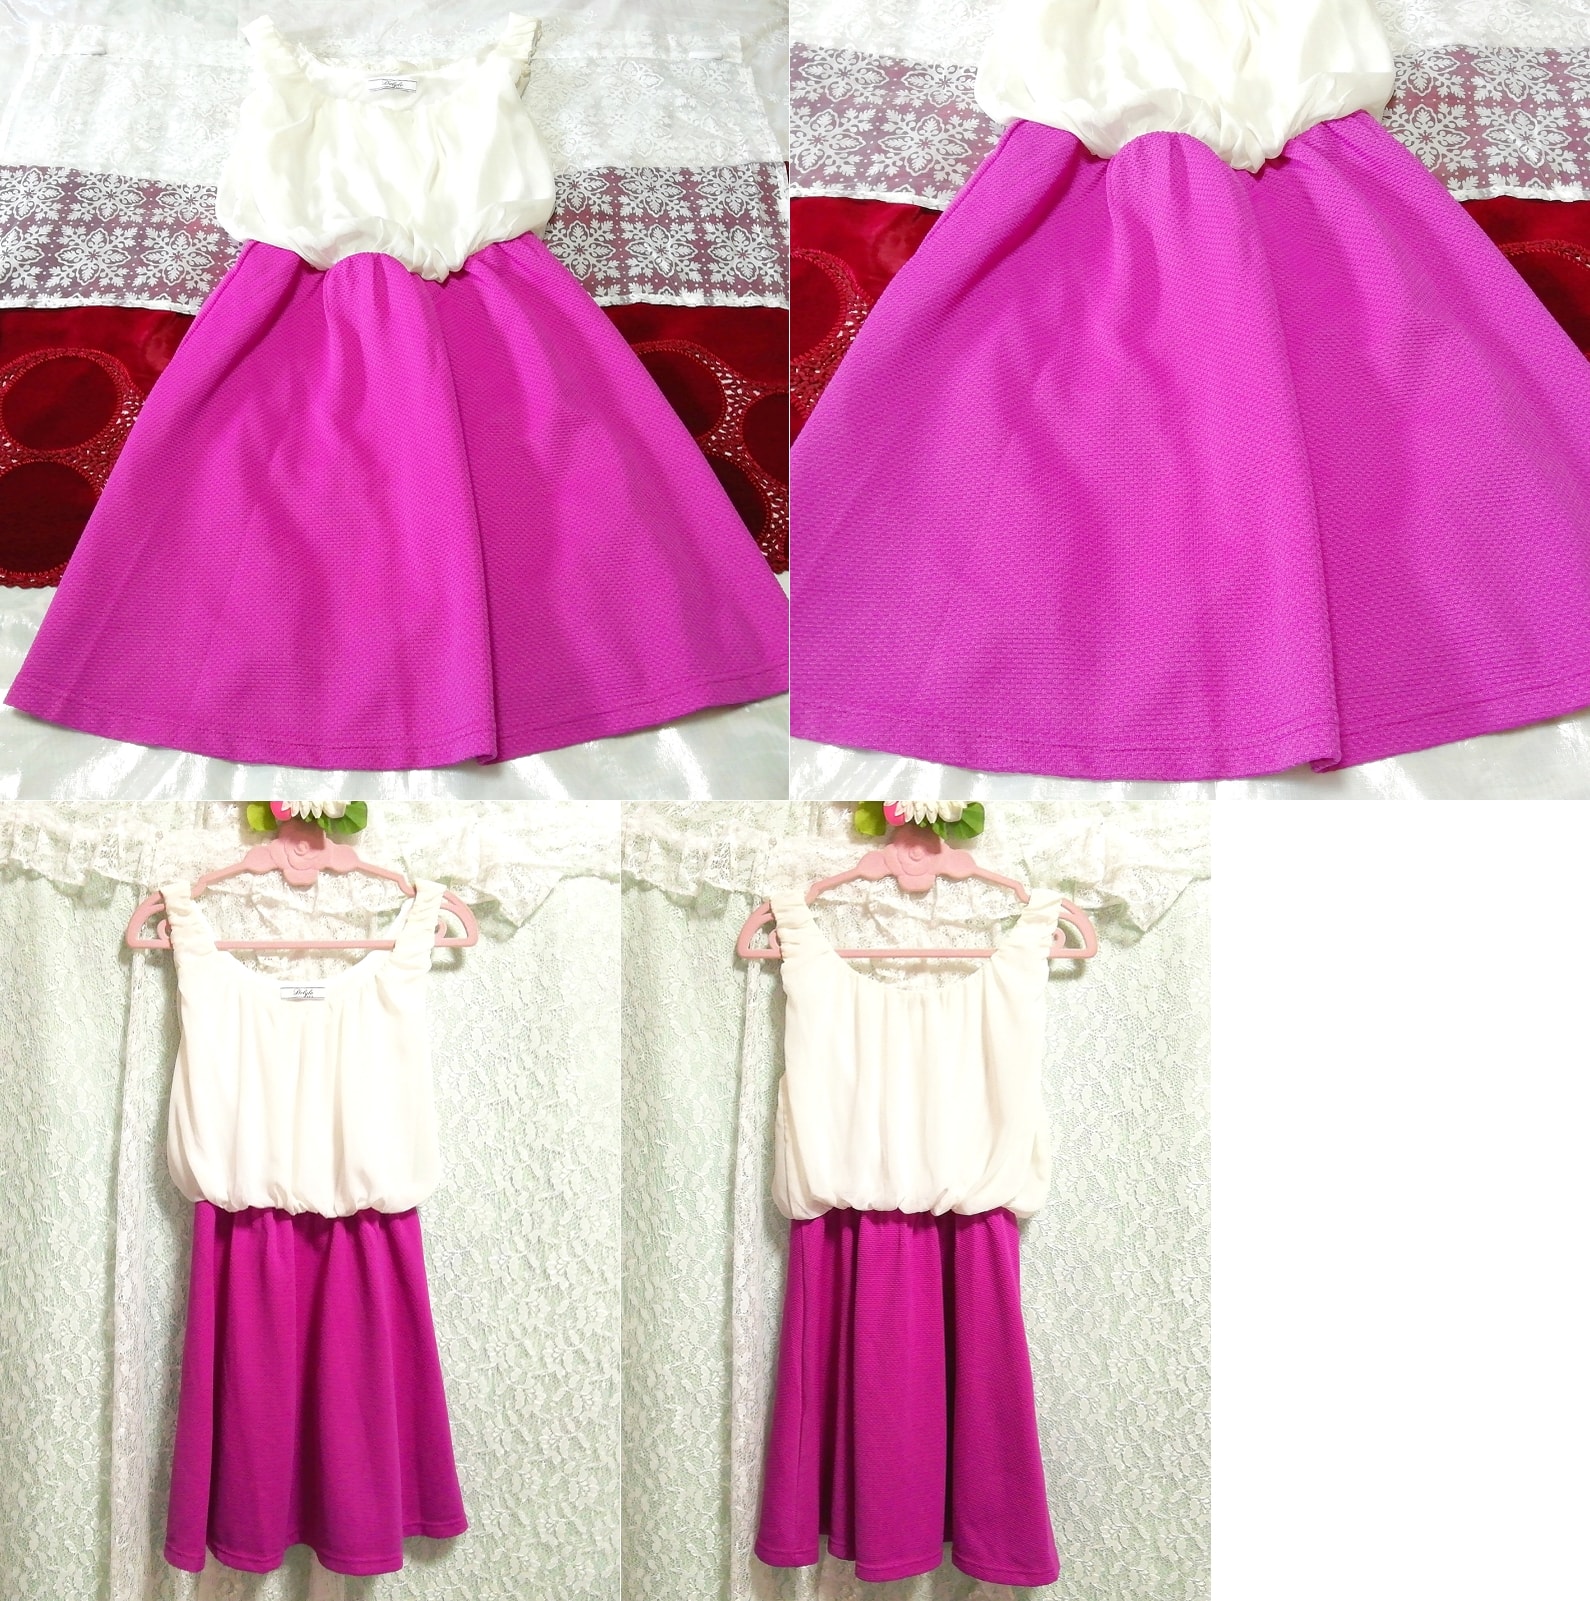 White chiffon sleeveless purple skirt negligee nightgown nightwear mini dress, mini skirt, m size